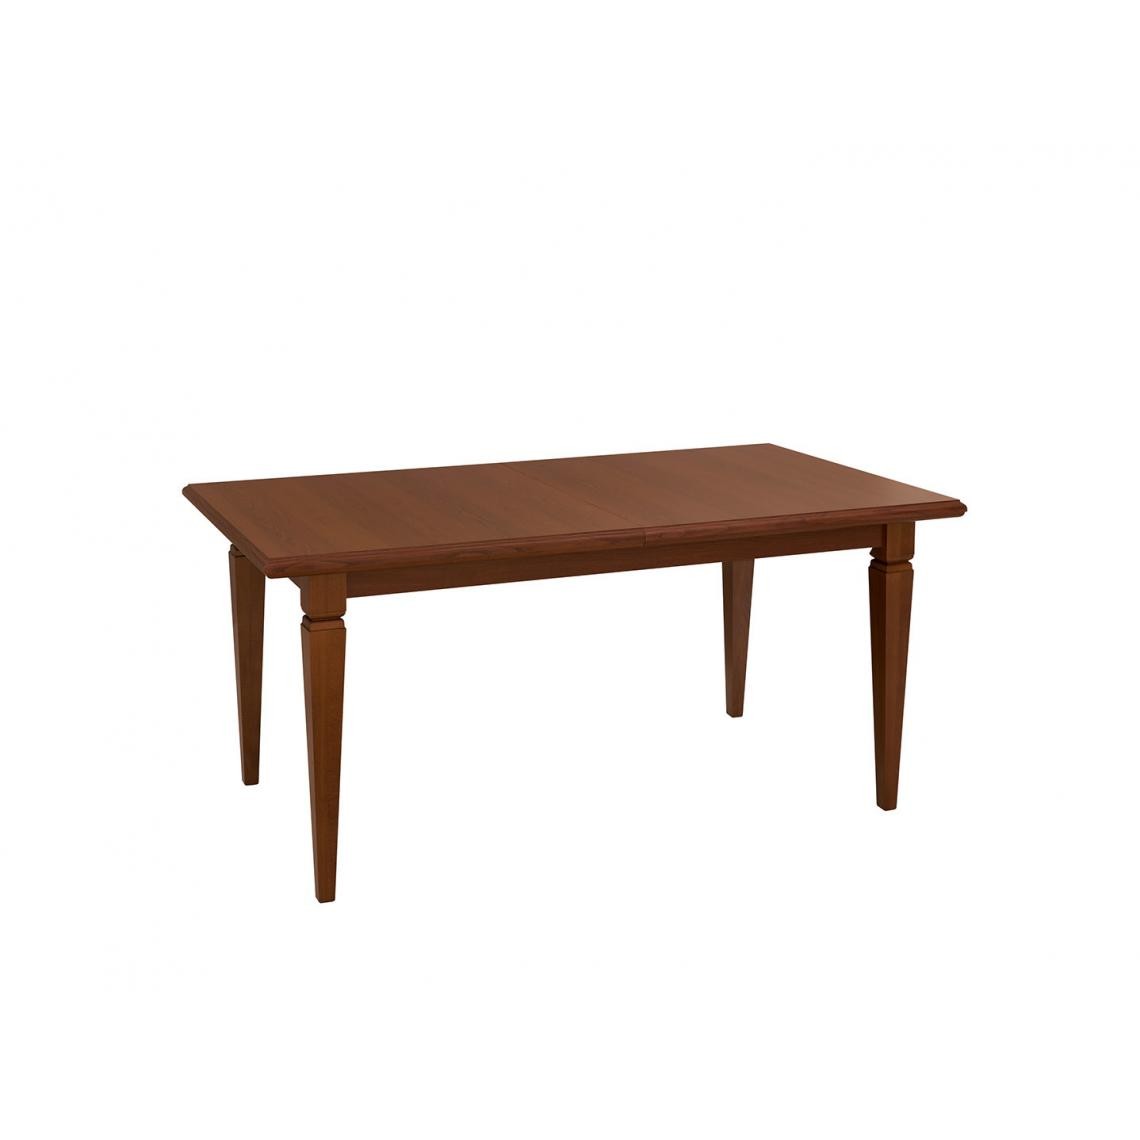 Hucoco - KENTO - Table extensible salon/cuisine/salle à manger - Style classique - 160-200x90x76.5 cm - Bois de hêtre - Marron - Tables d'appoint